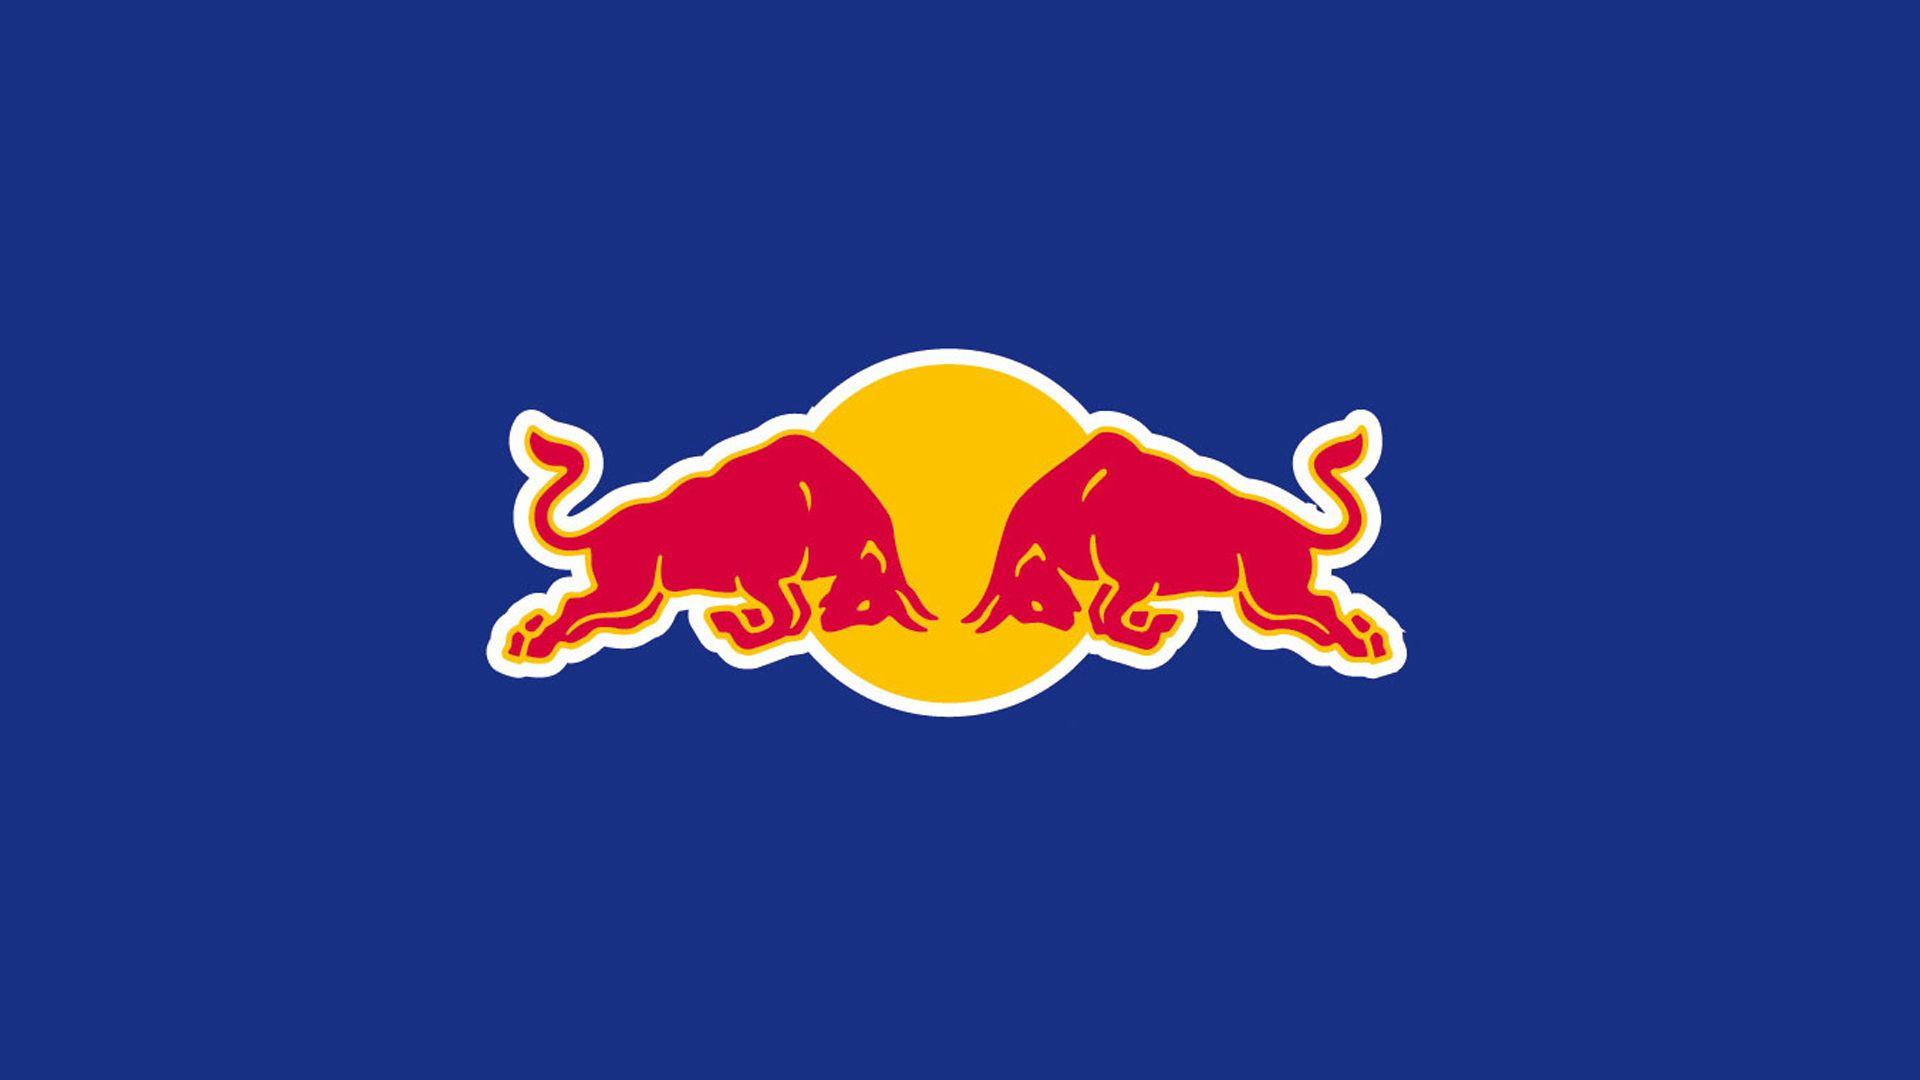 Red Bull Logo - Home - Red Bull Advanced Technologies